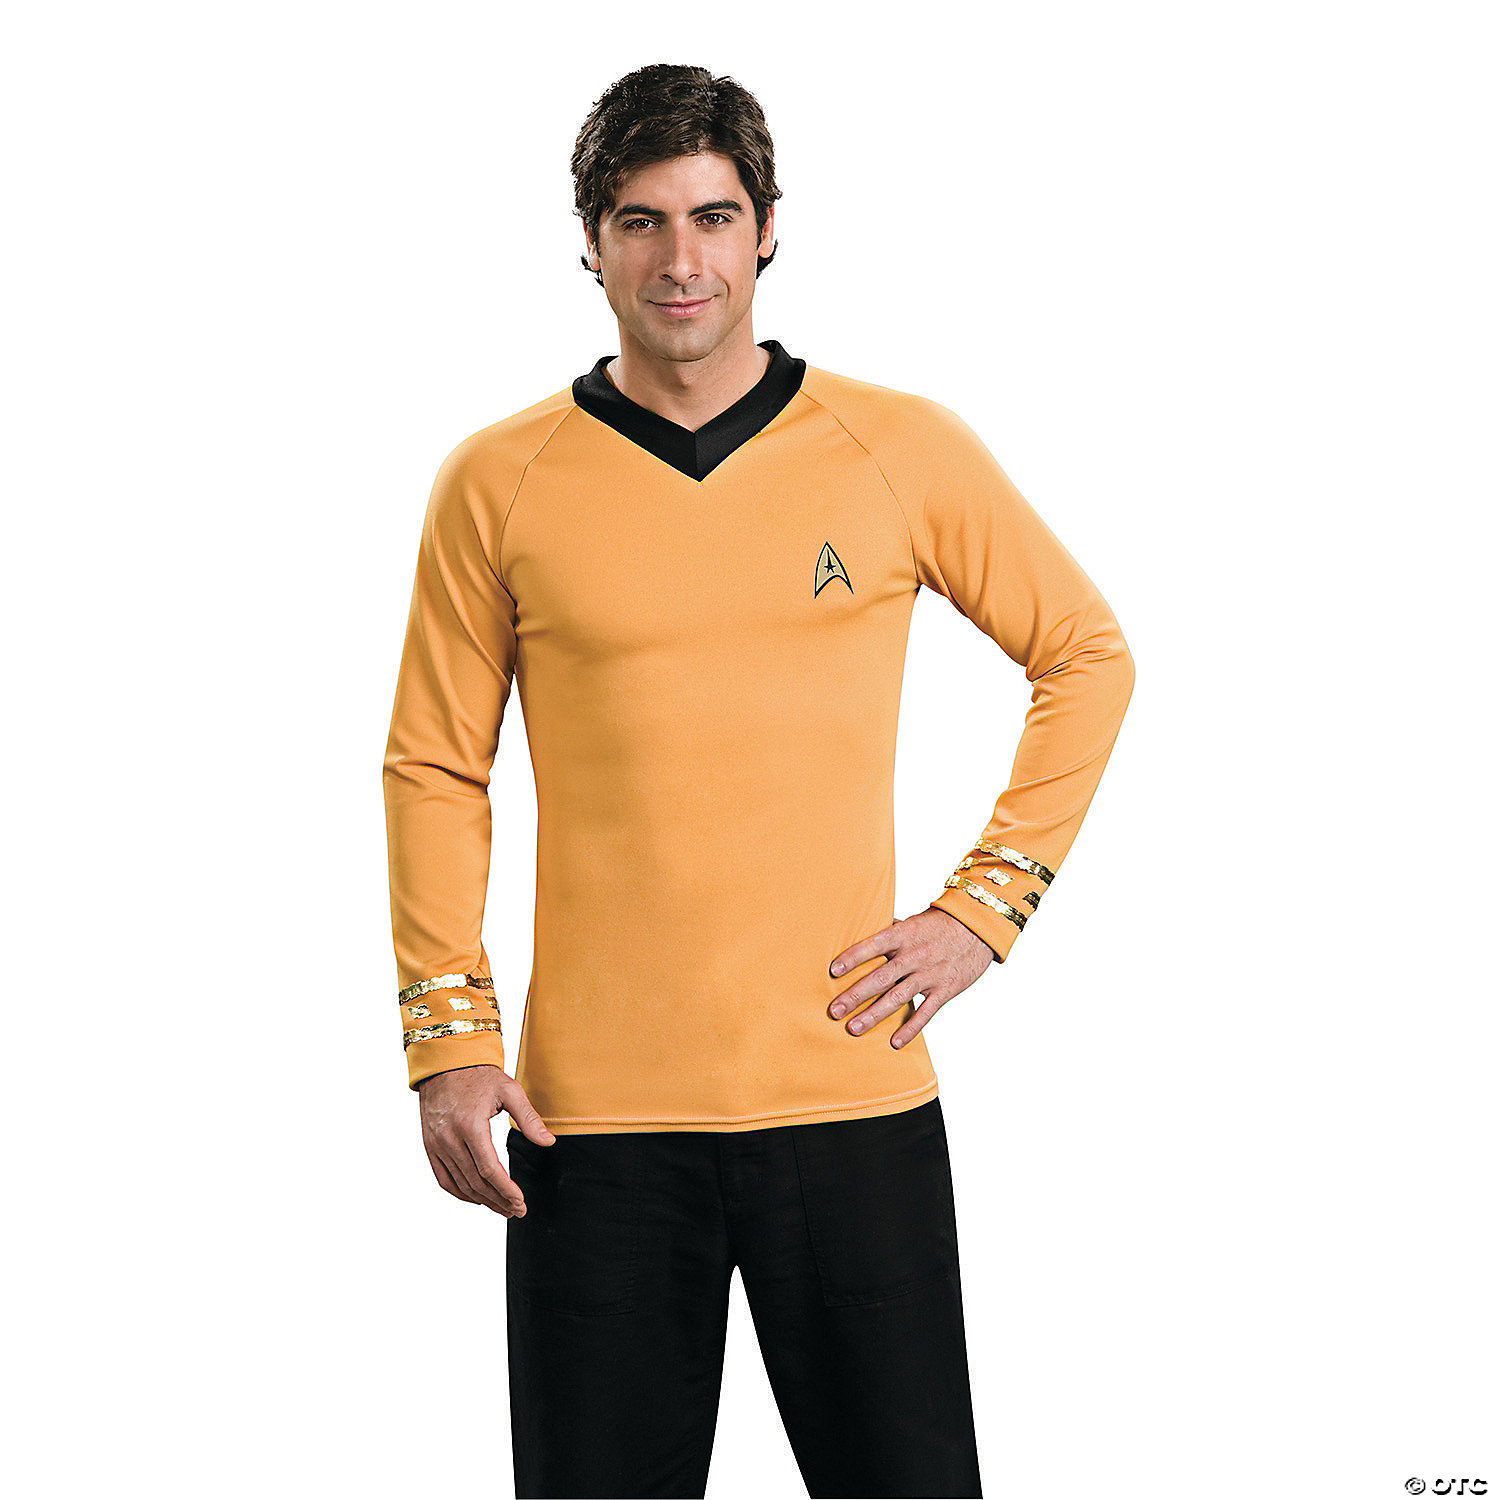 Star Trek Men's Uniforme T-Shirt